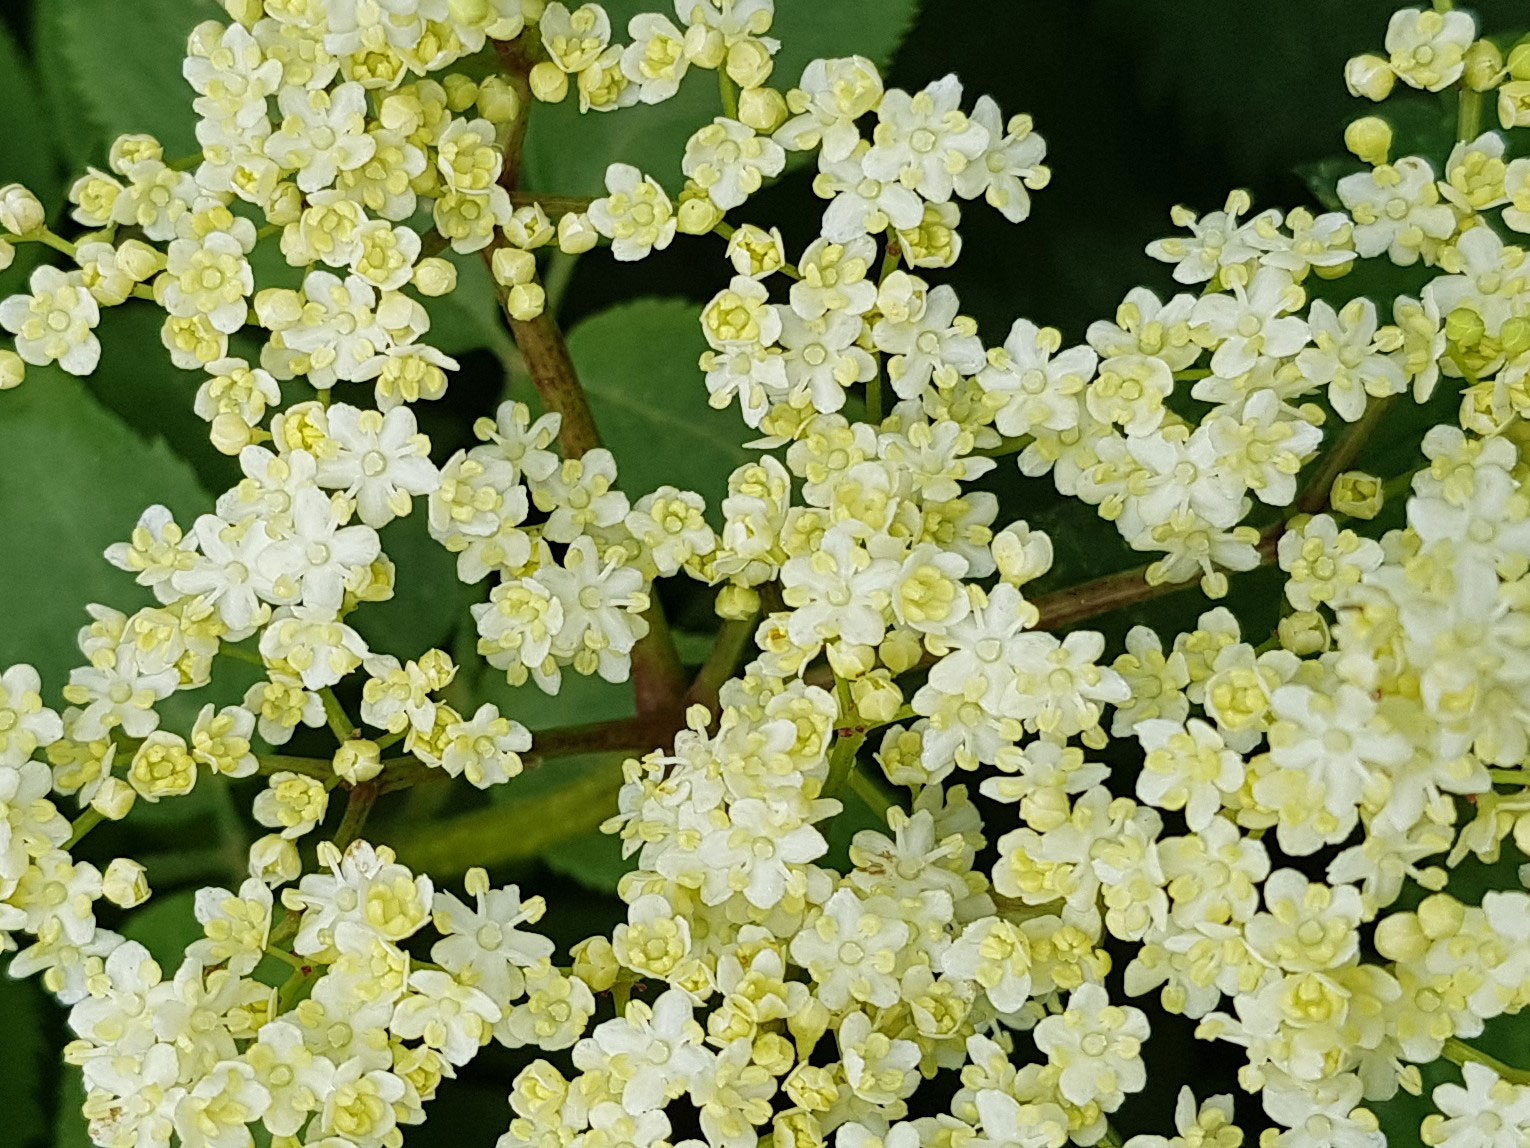 Close up of white elderflowers